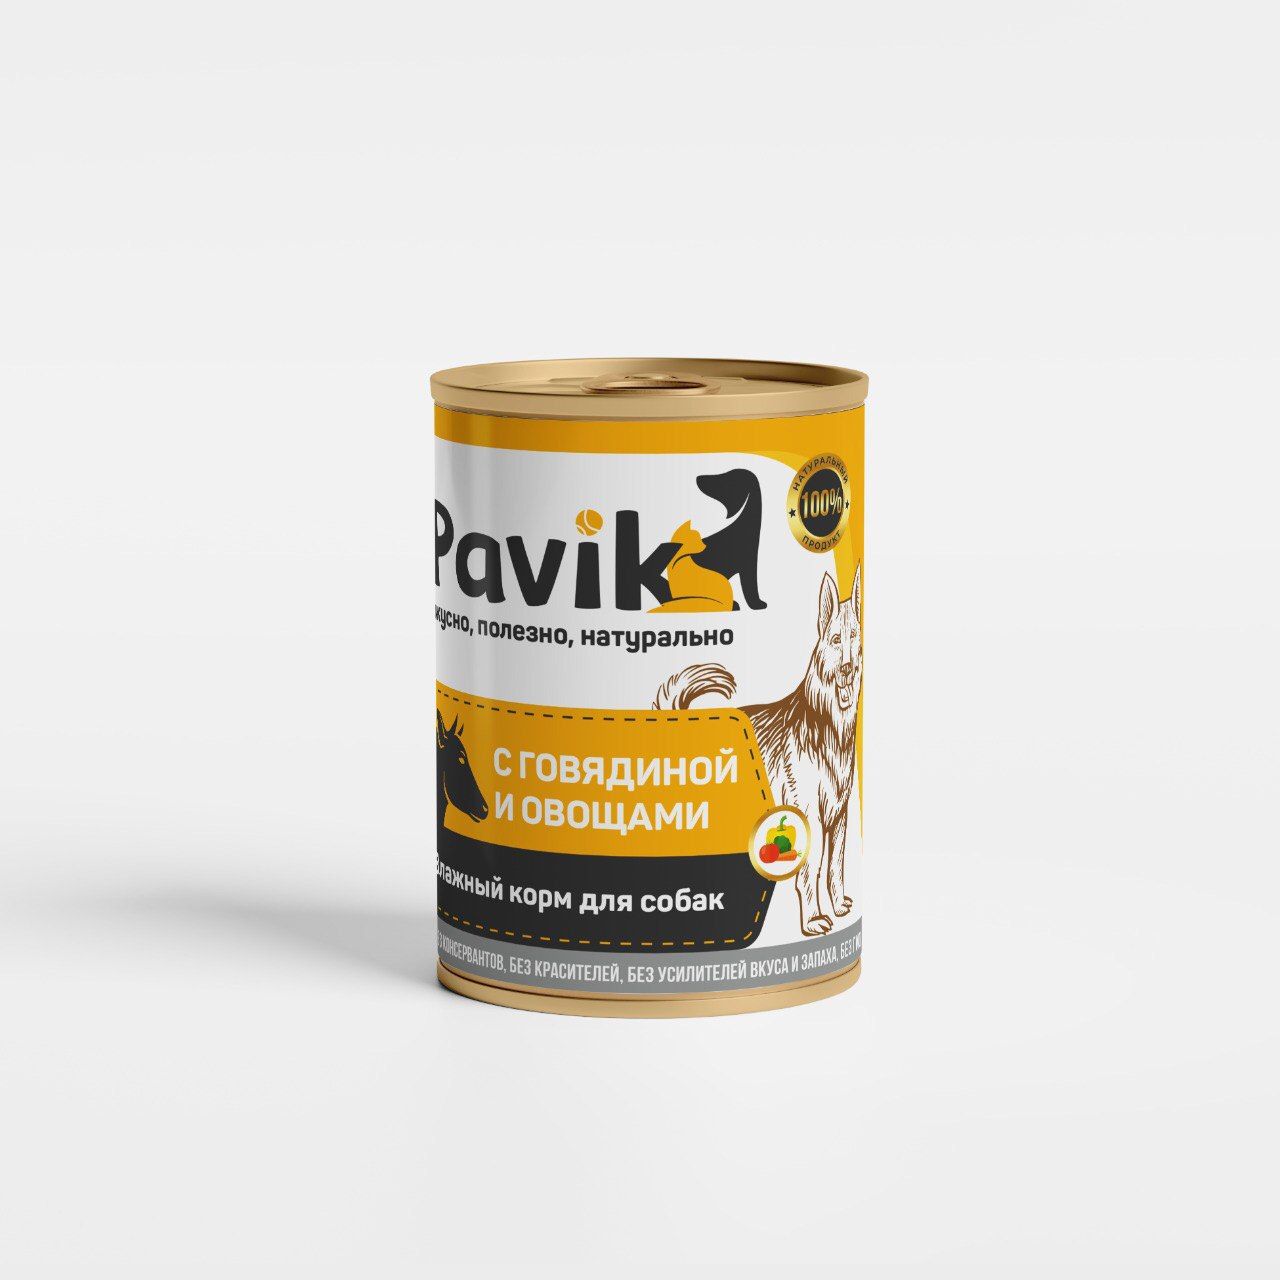 Консервы для собак Pavik, Говядина с овощами, 330 г